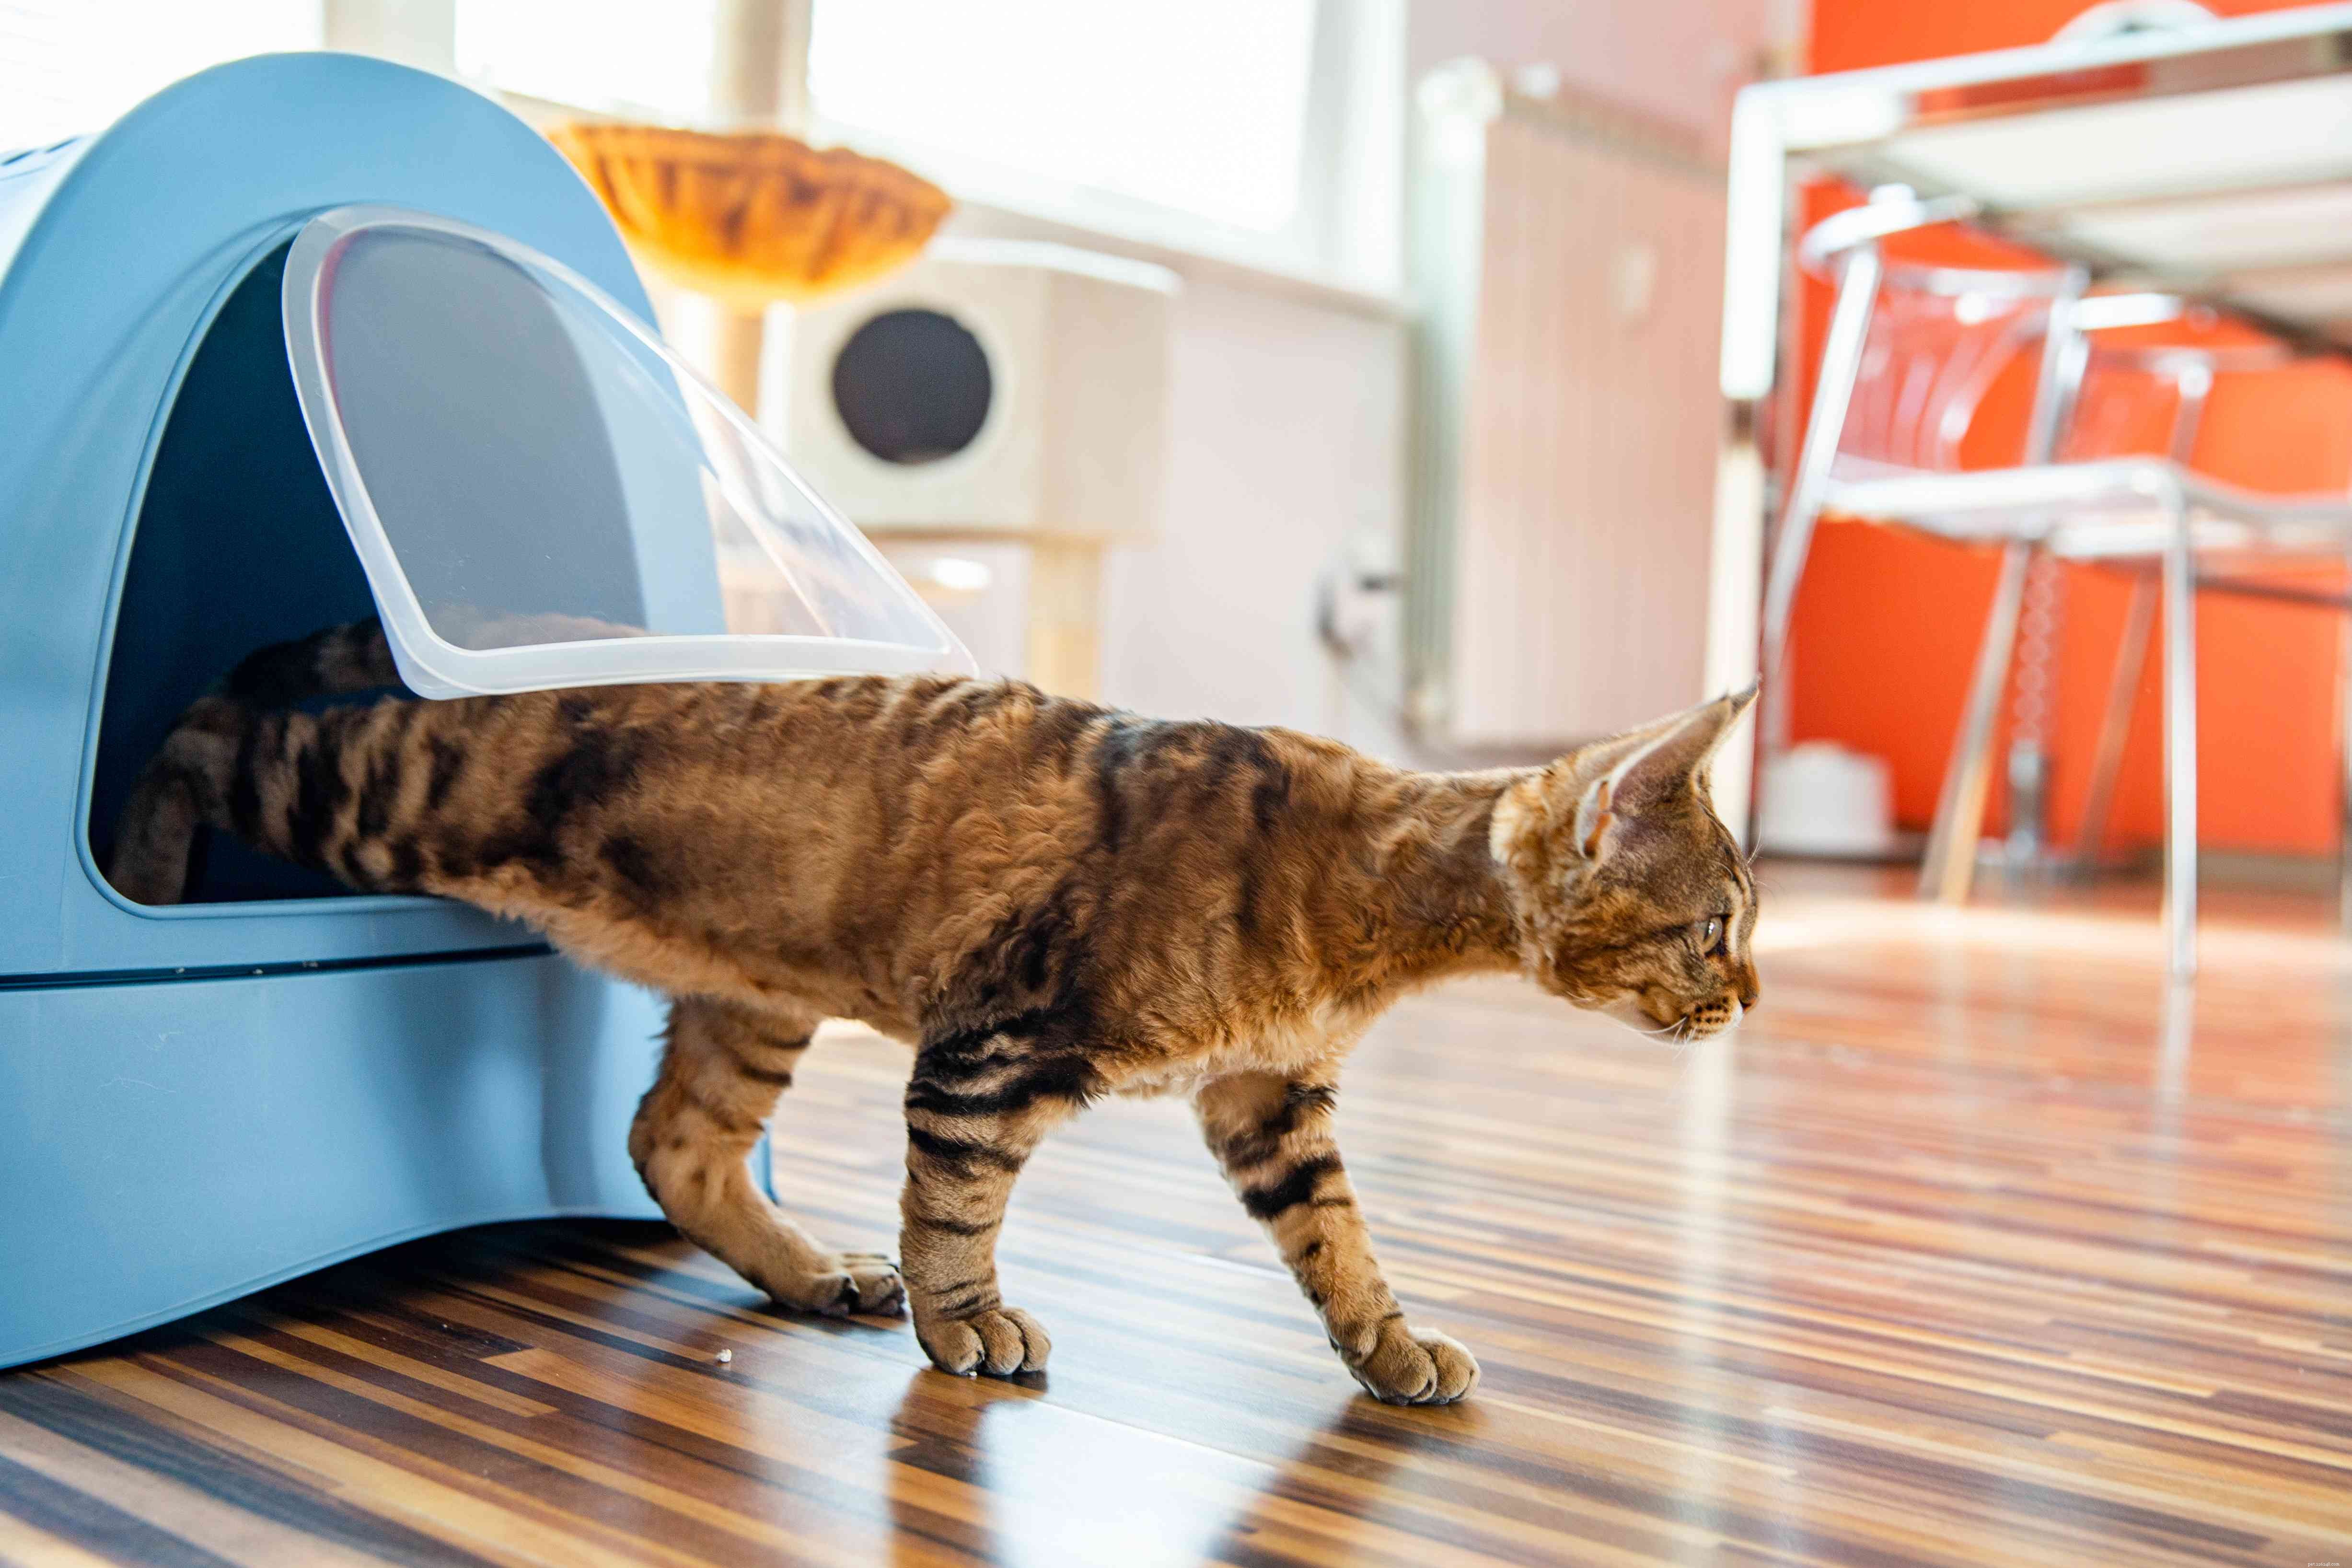 Comment résoudre les problèmes de comportement liés au bac à litière pour chat